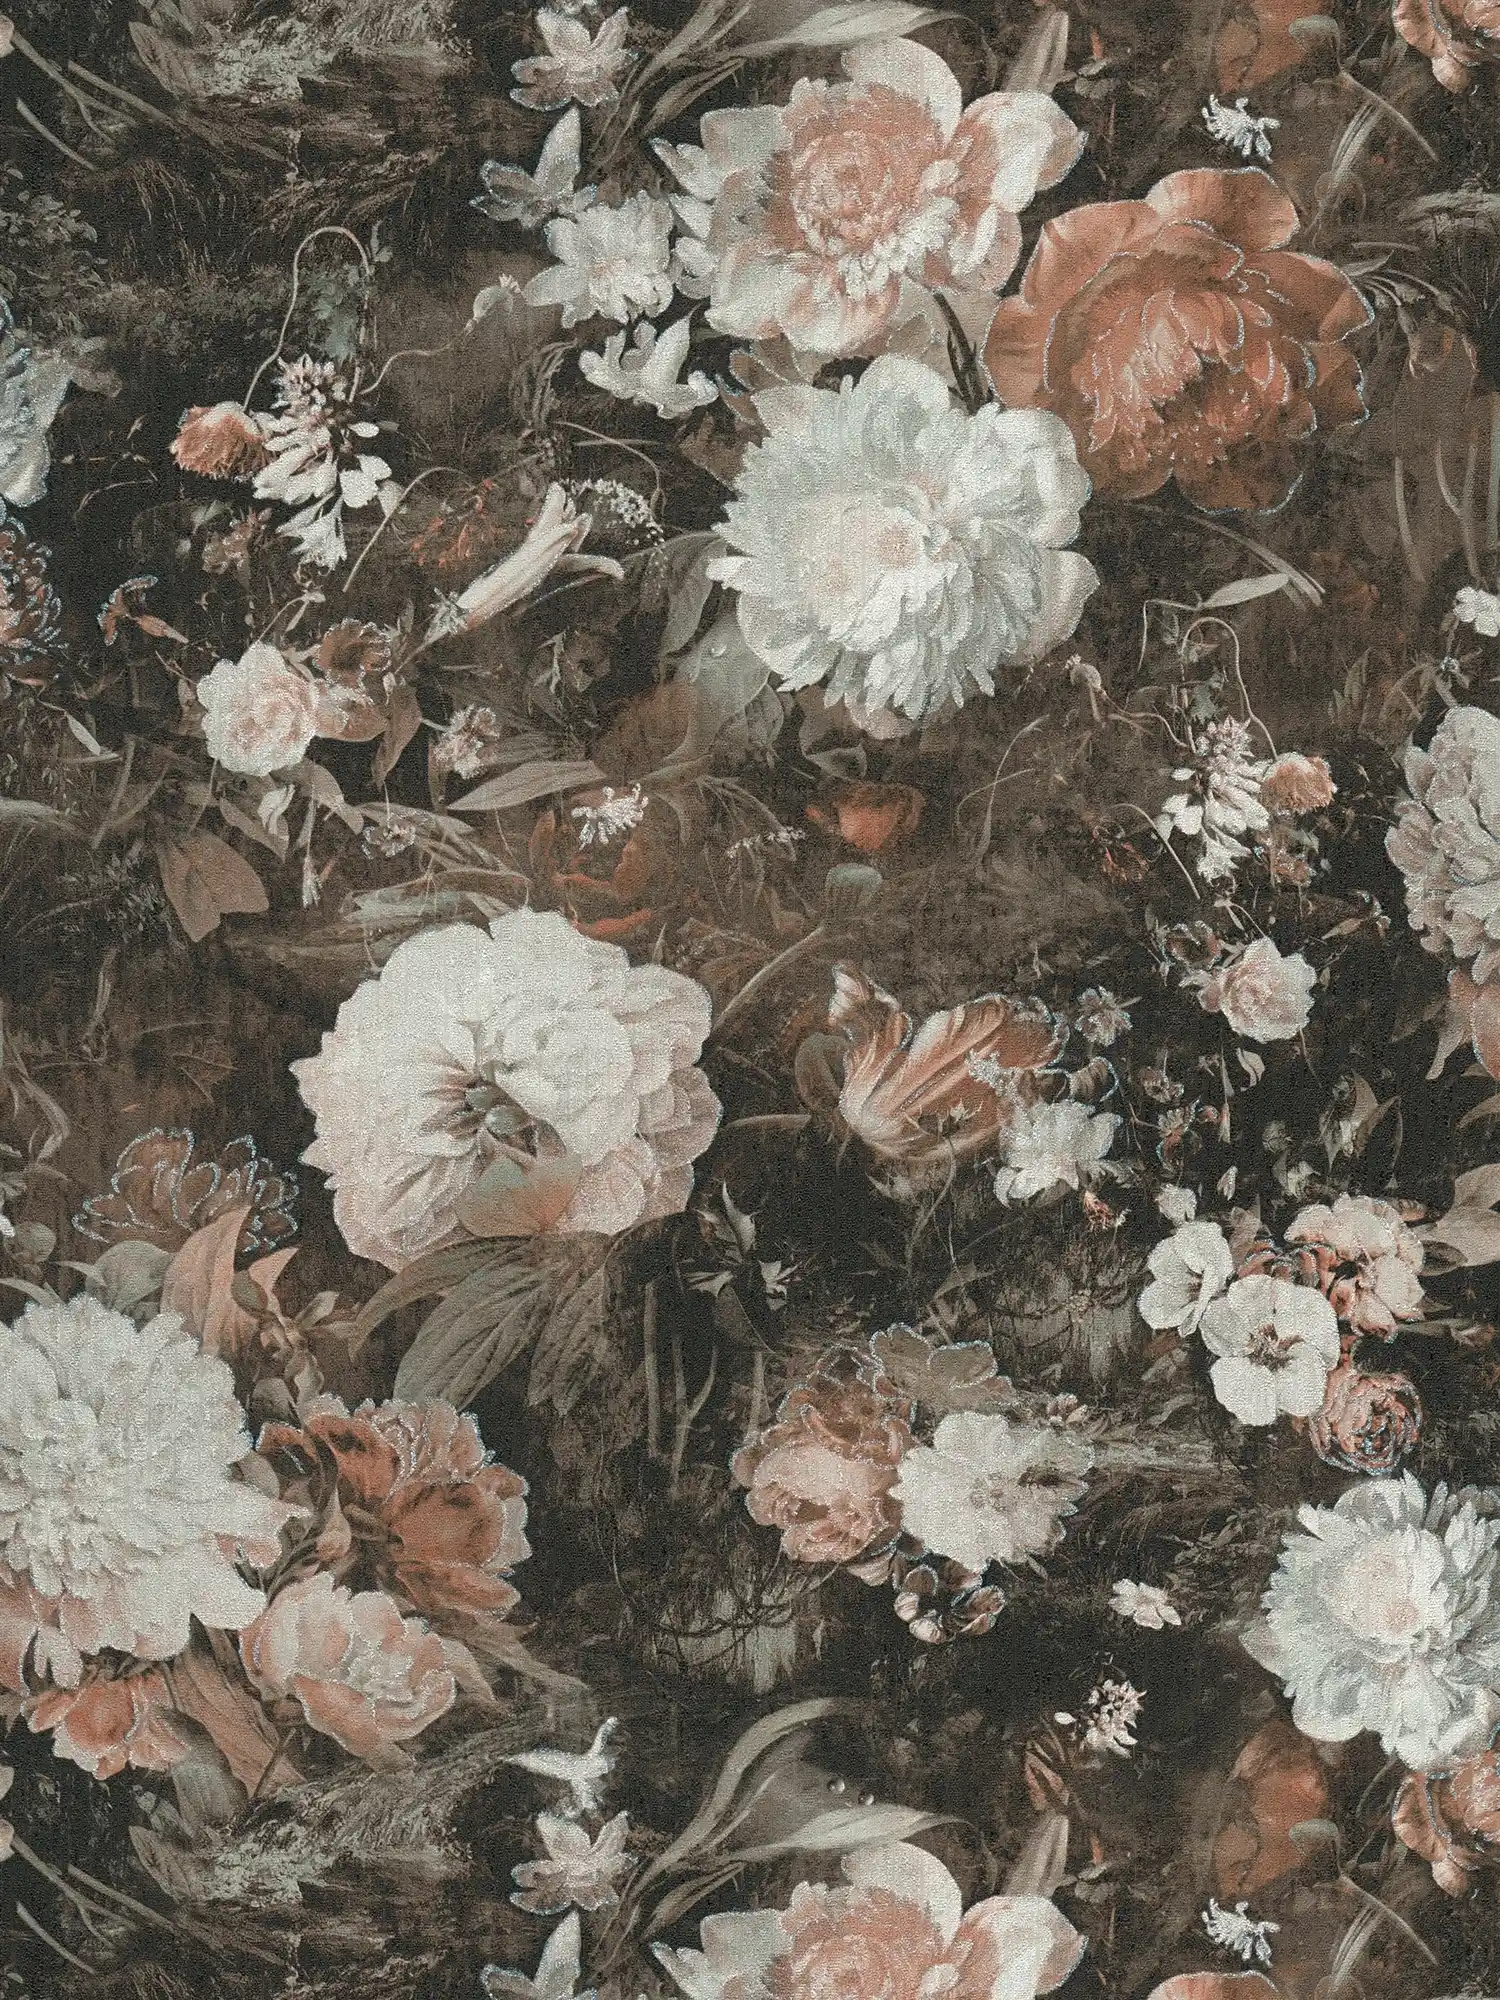         Vintage Blumentapete Klassik Rosen-Muster – Creme, Braun
    